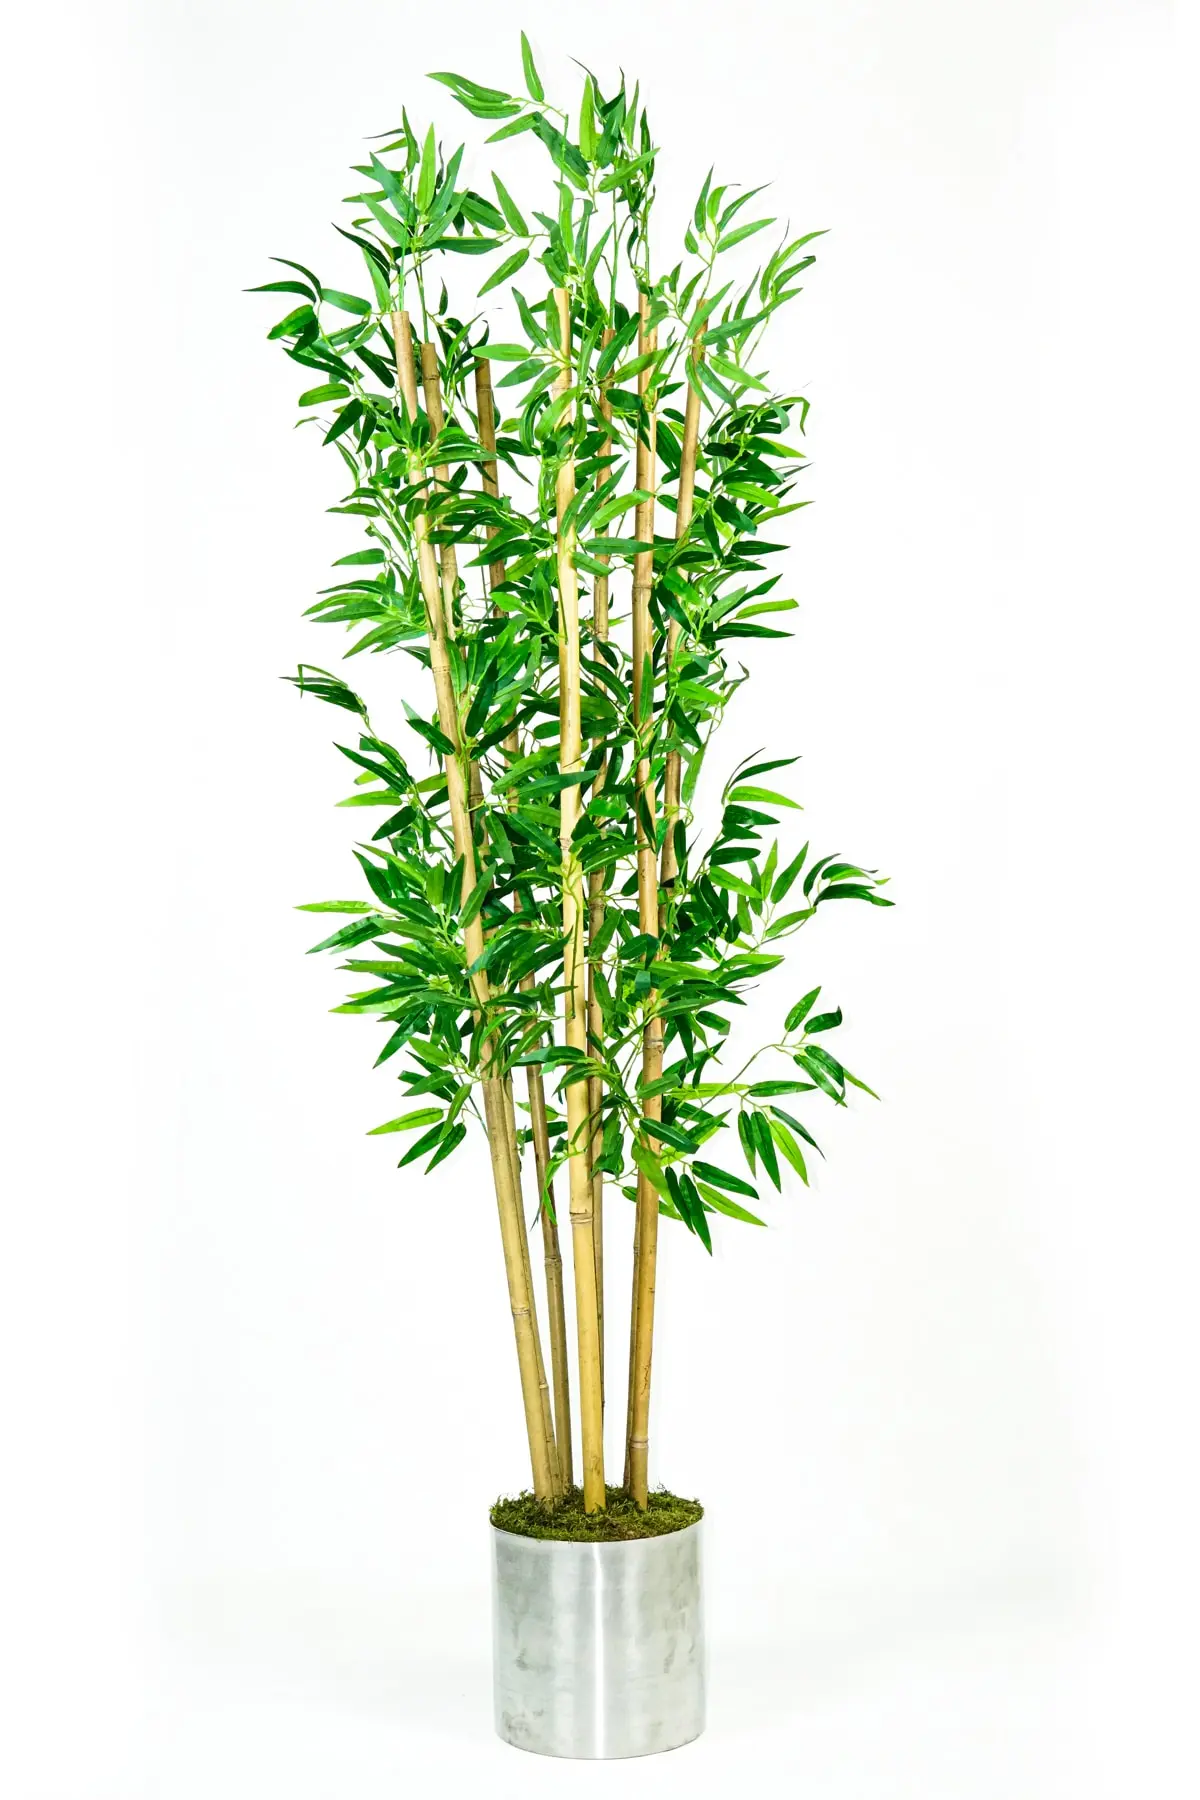 ست گلدان فلزی - درخت بامبو مصنوعی نقره ای سبز 